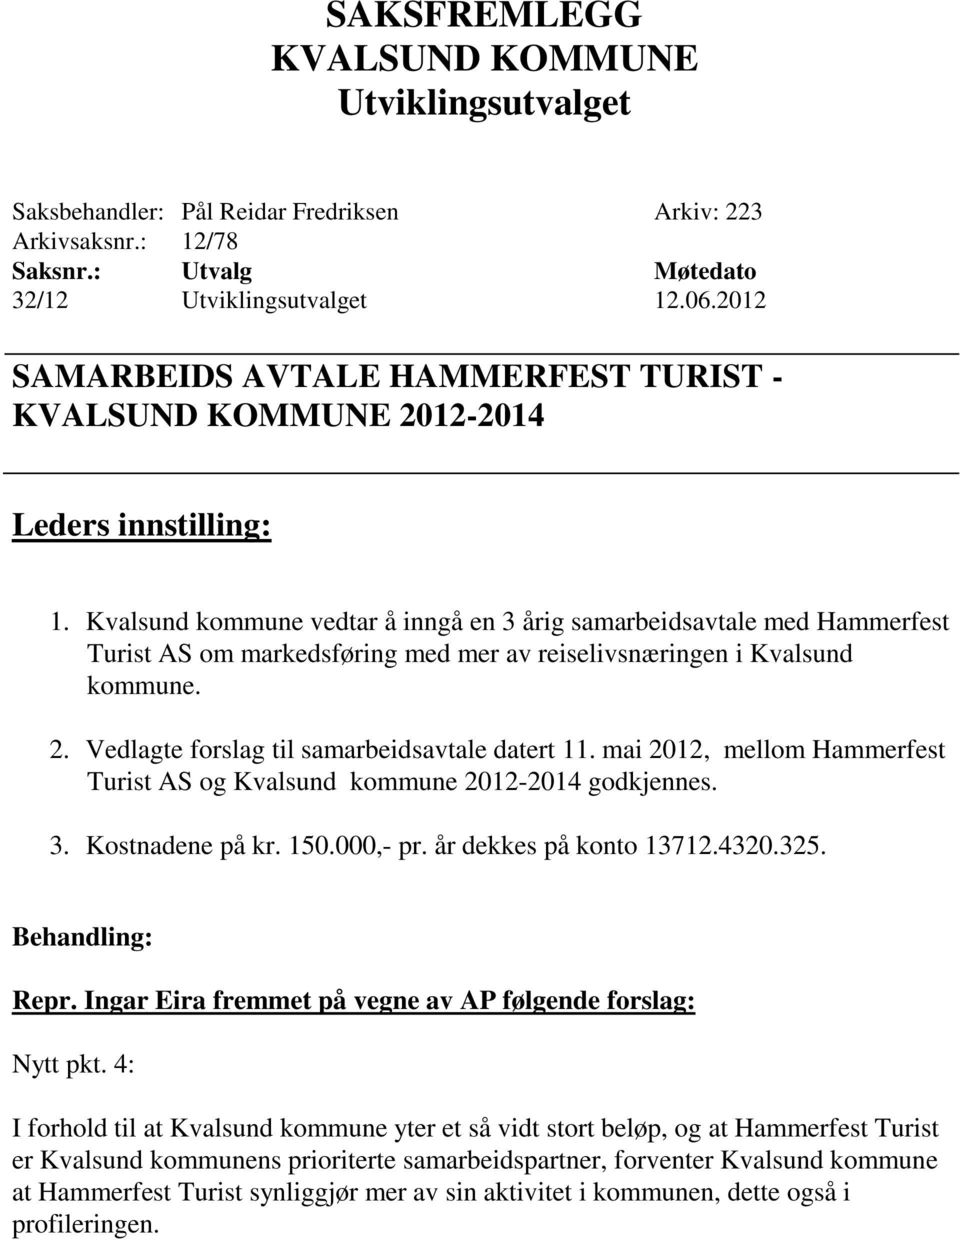 Vedlagte forslag til samarbeidsavtale datert 11. mai 2012, mellom Hammerfest Turist AS og Kvalsund kommune 2012-2014 godkjennes. 3. Kostnadene på kr. 150.000,- pr. år dekkes på konto 13712.4320.325.